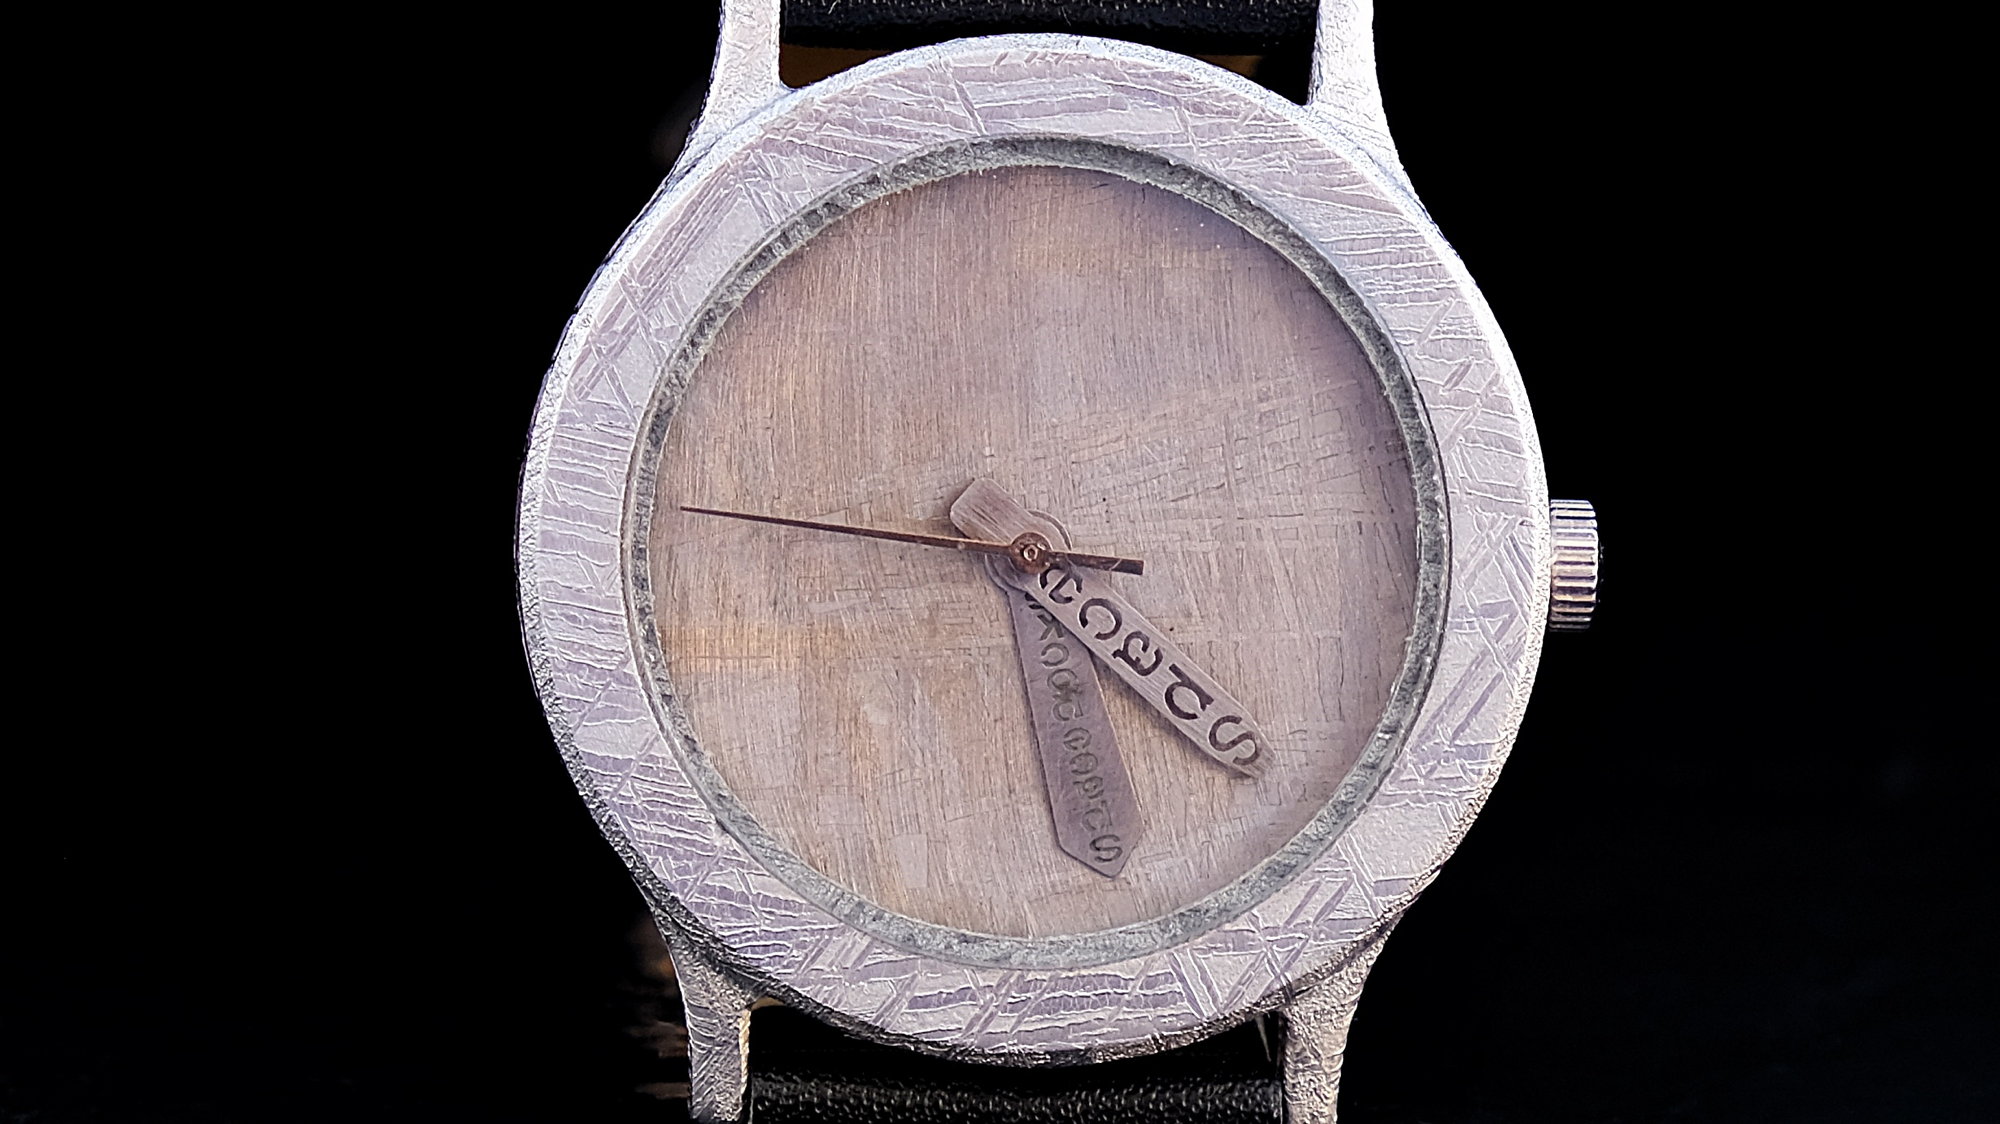 Original laguiole - Space Watch 03, Luxus Armbanduhr mit 2 verschiedene Metall-Meteoriten als Zifferblatt und Gehäuse